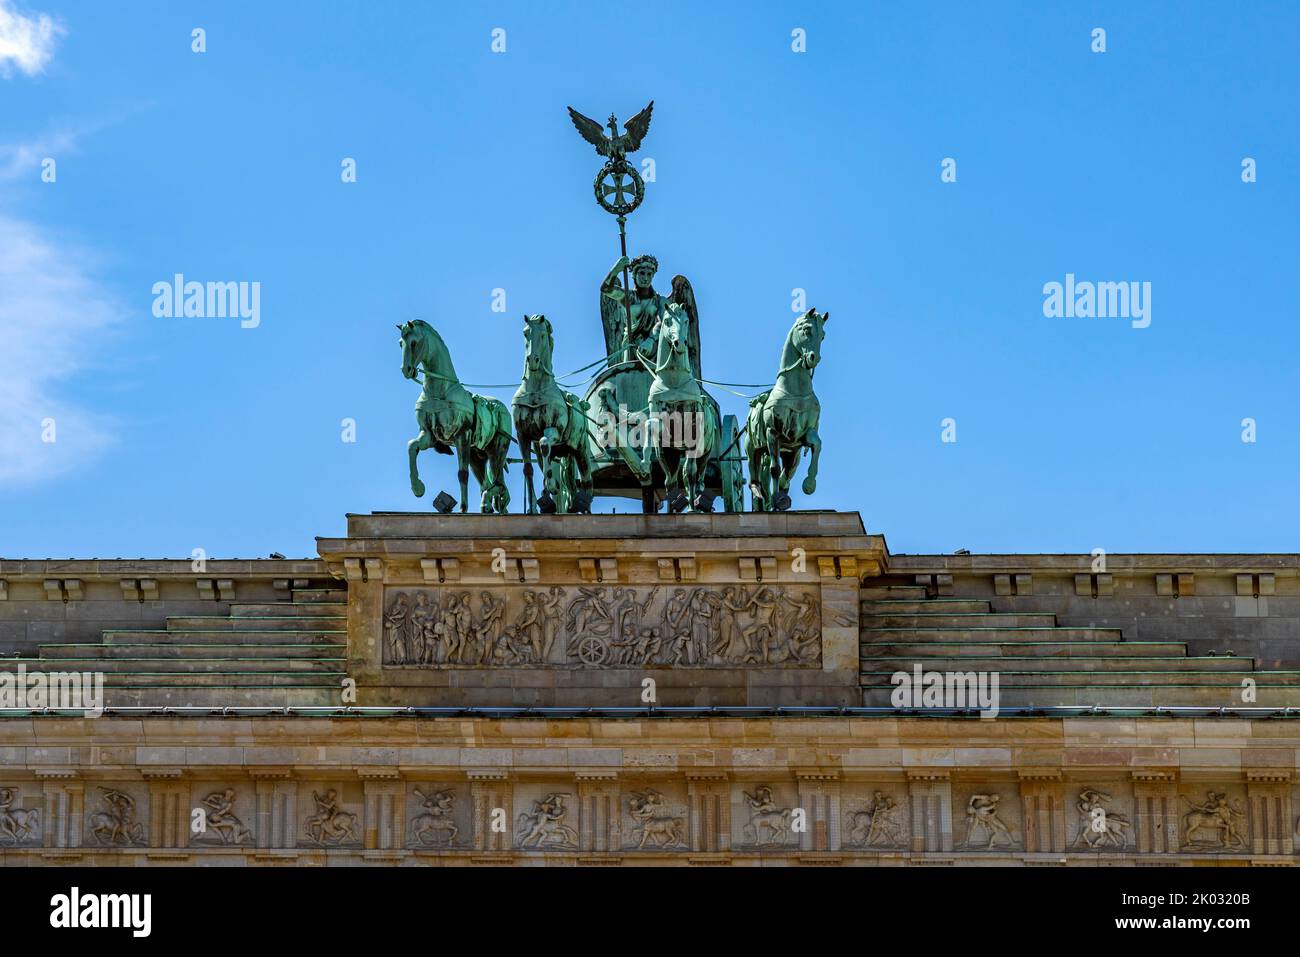 Quadriga sur la porte de Brandebourg construite dans les années 1789 à 1793. La porte de Brandebourg à Berlin est une ancienne porte triomphale classiciste, qui se trouve sur Pariser Platz dans le quartier berlinois de Mitte. La porte est la seule conservée des 18 dernières portes de la ville de Berlin. Banque D'Images